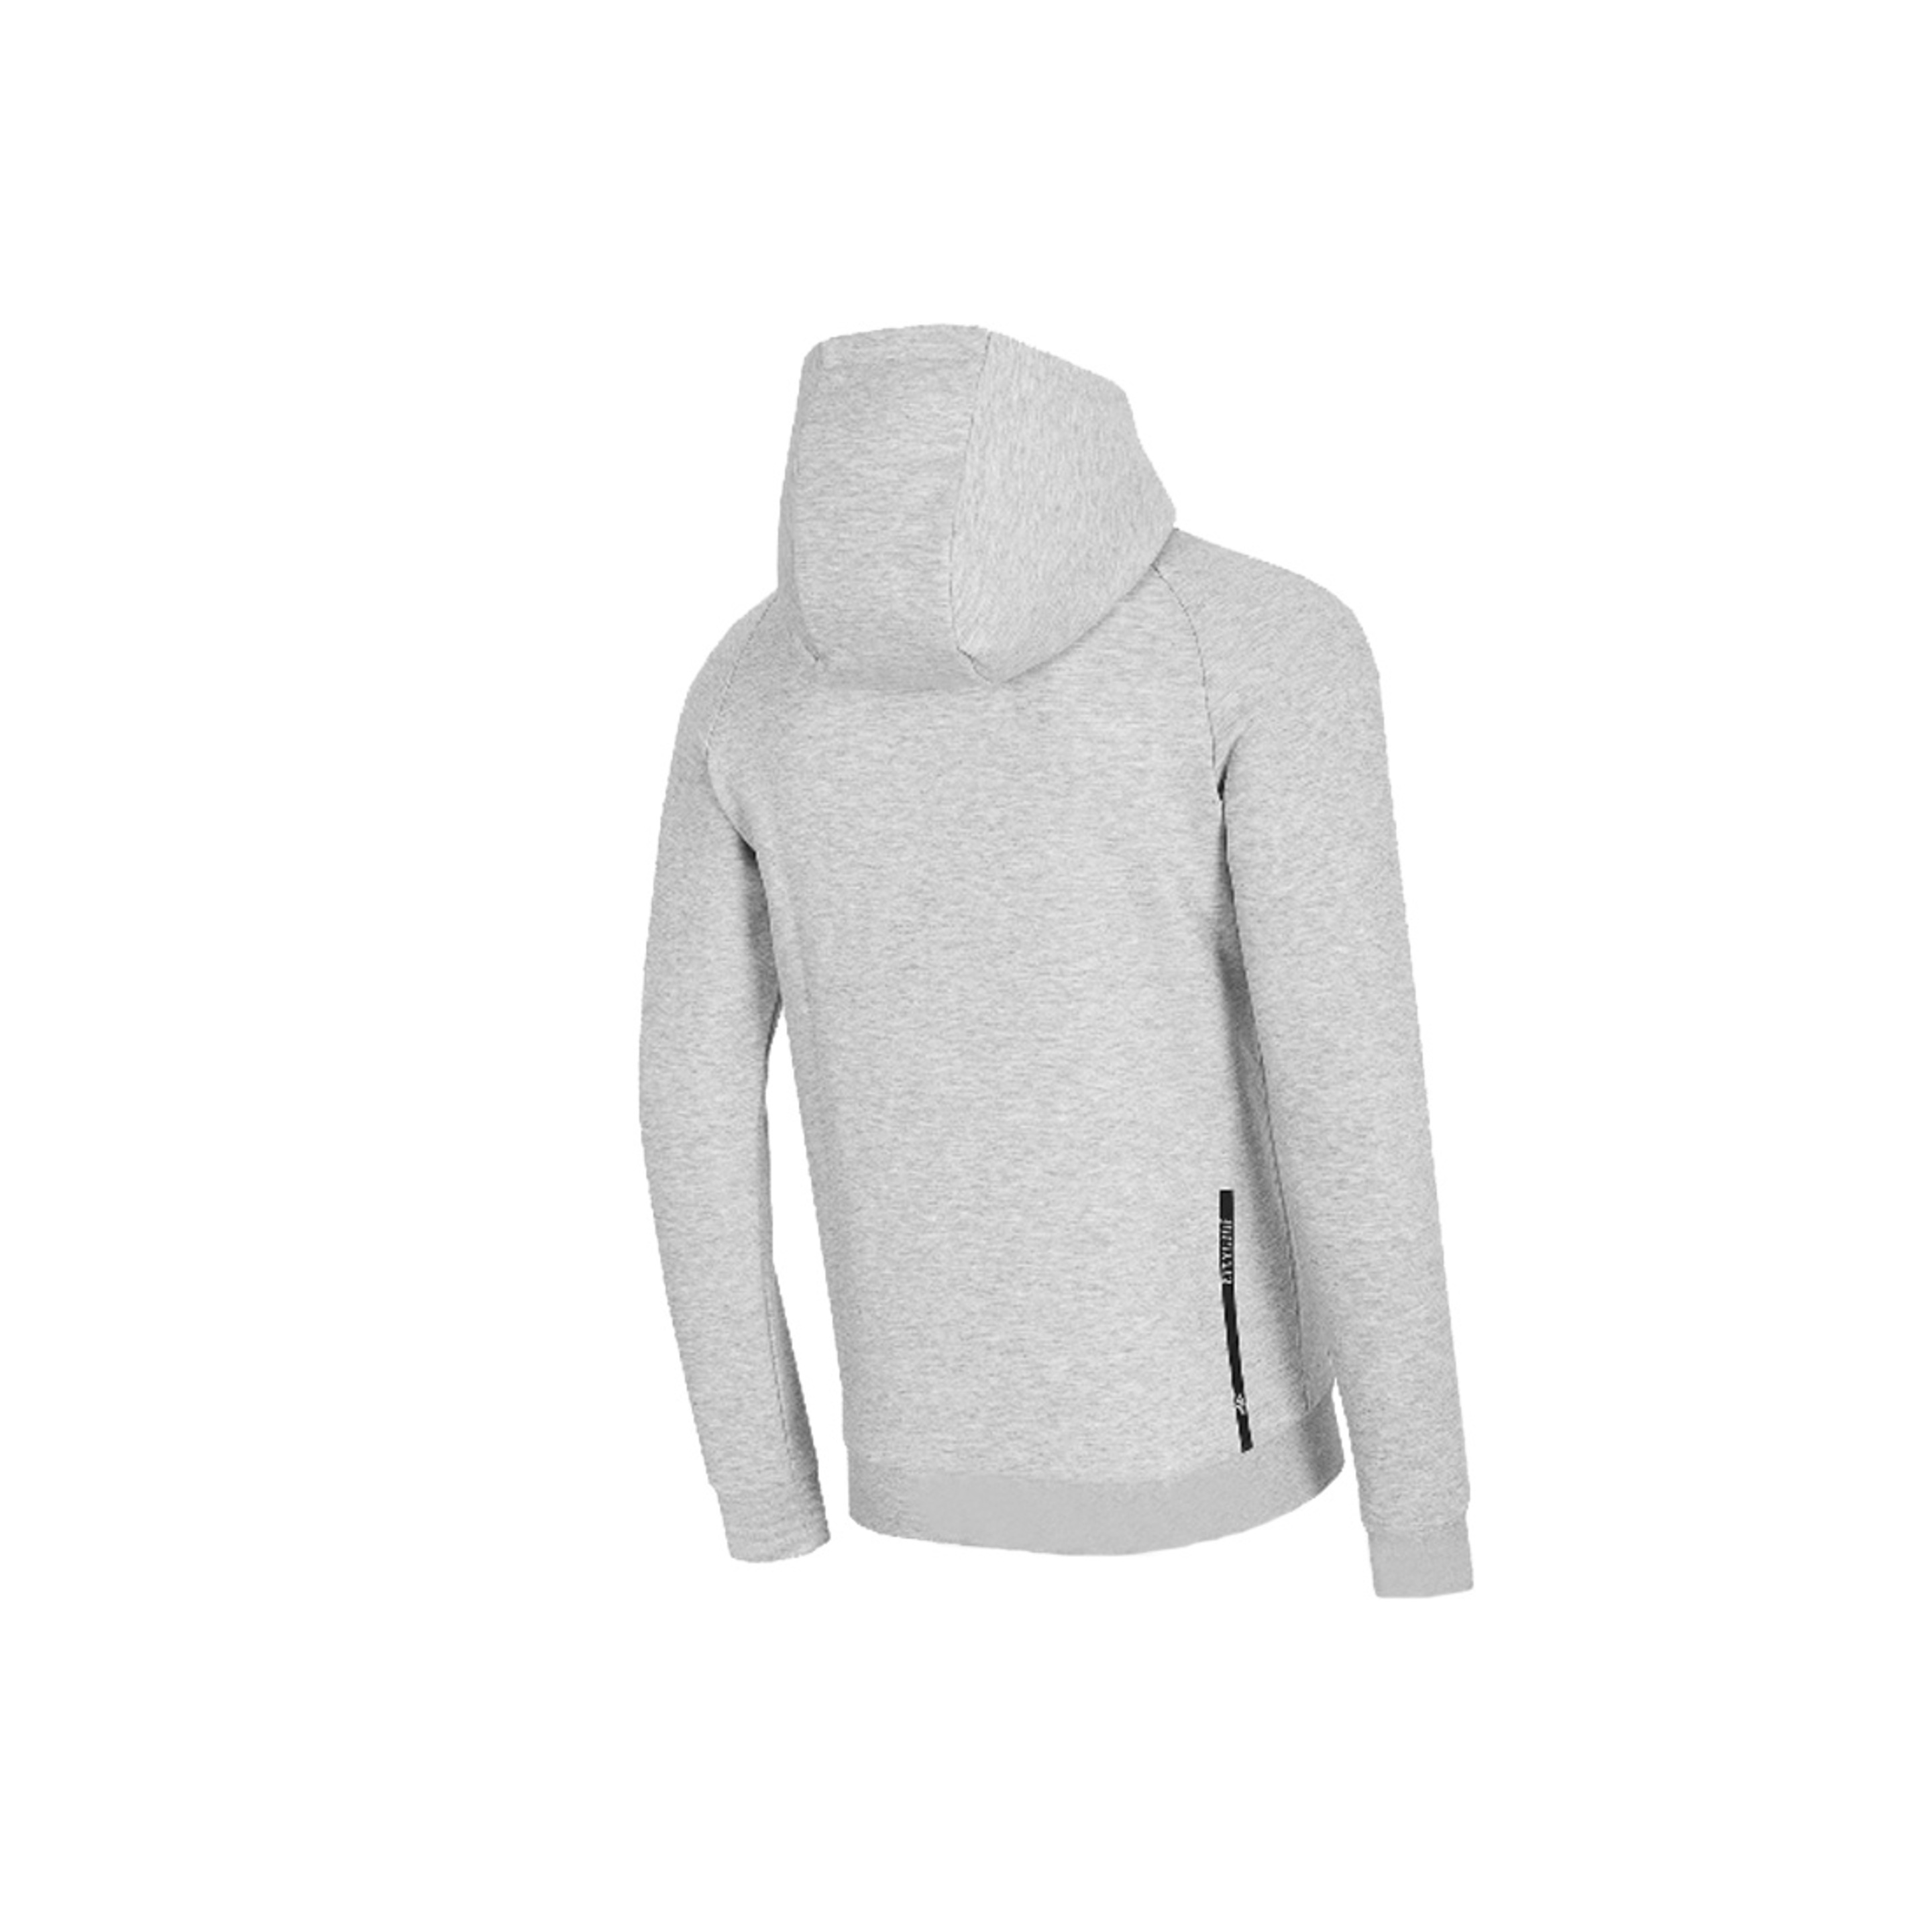 4f Men's Sweatshirt Hoodie H4l20-blm013-27m